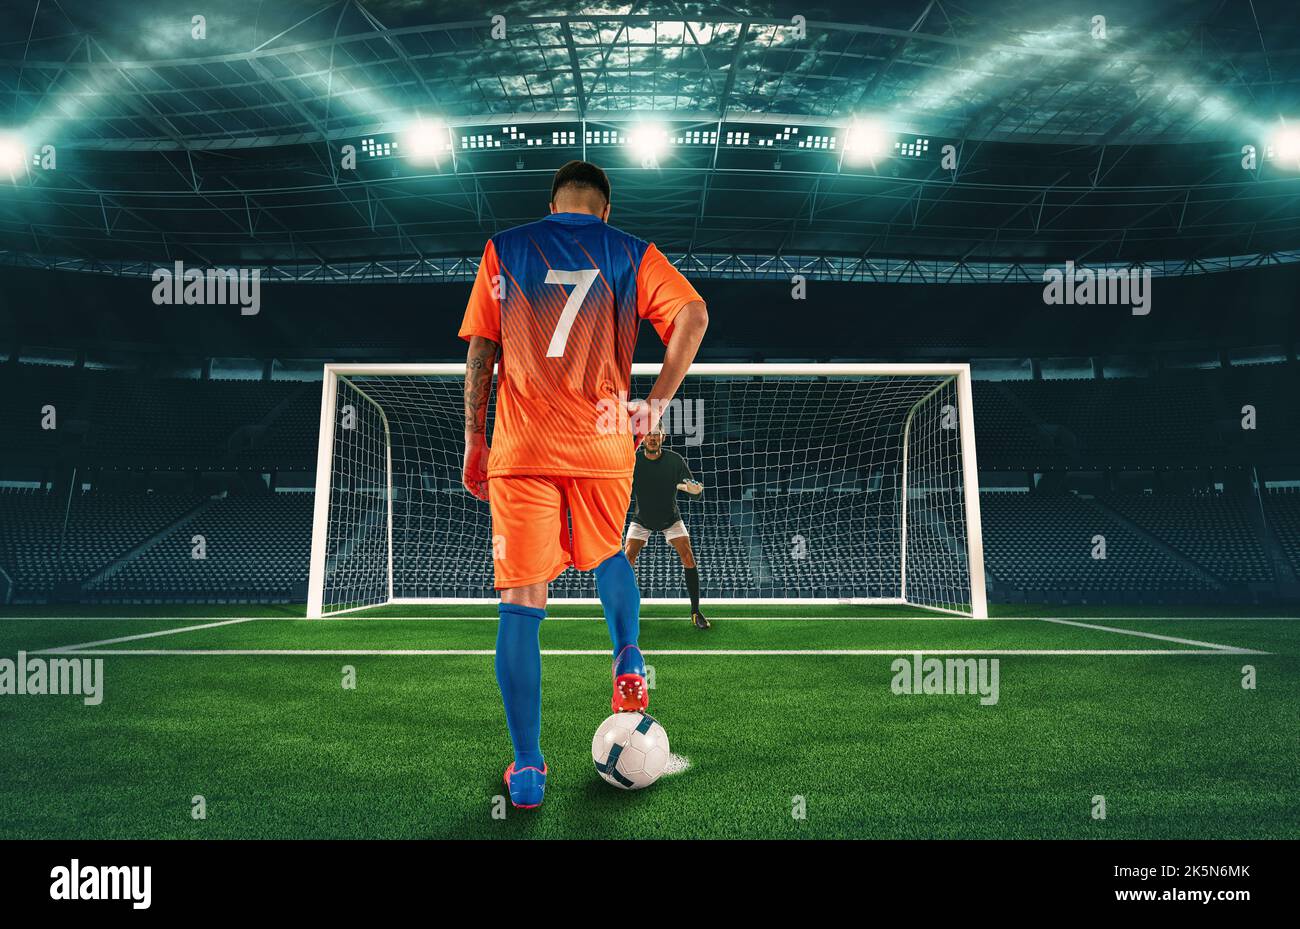 Fußballszene in der Nacht Spiel mit Spieler in orange Uniform tritt den Elfmeterstoß Stockfoto